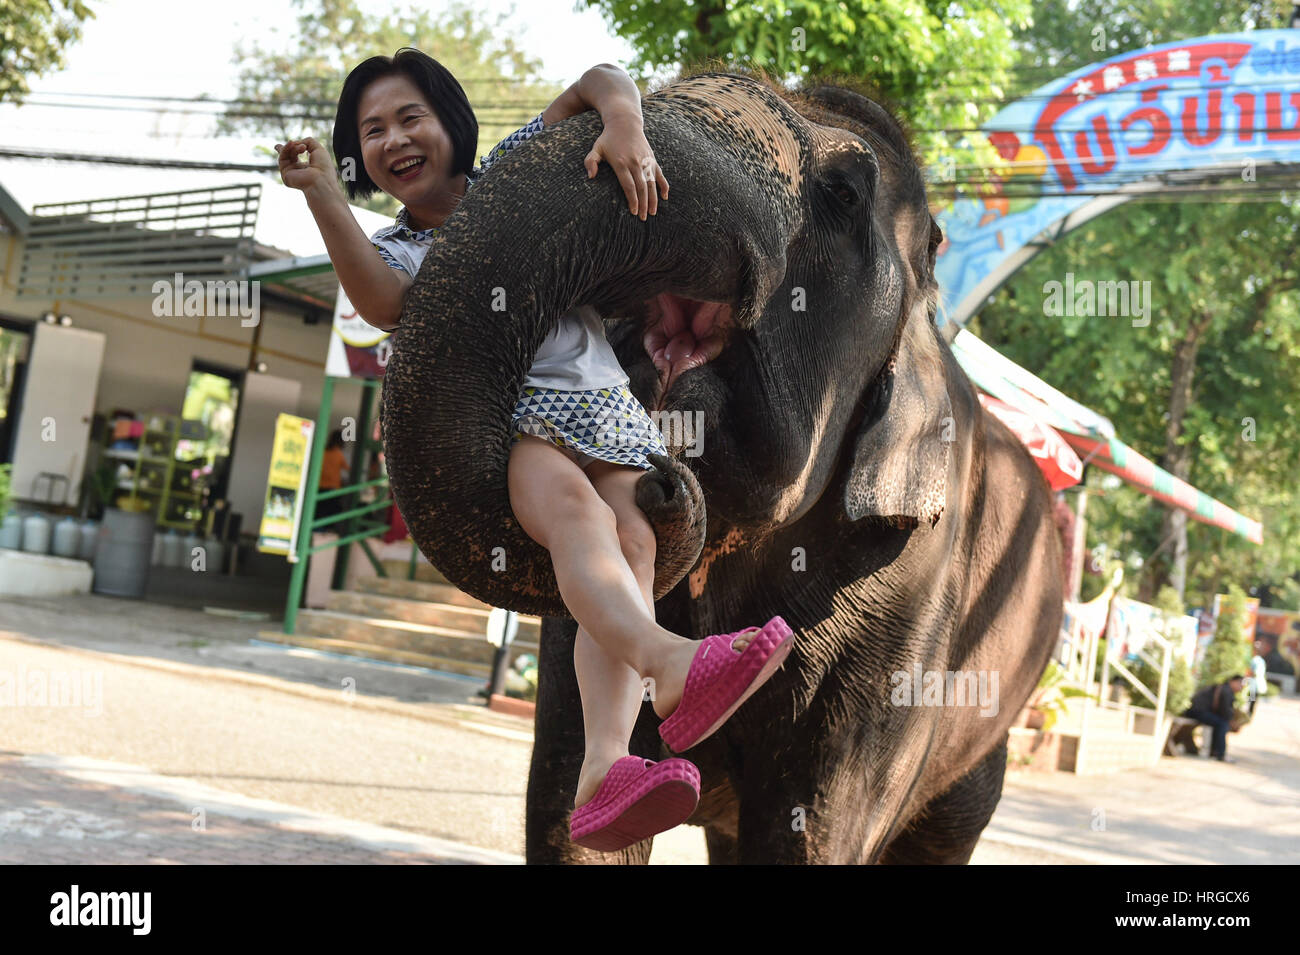 Chonburi. 1 Mar, 2017. Un elefante asiatico può contenere fino a turisti con il suo tronco in uno zoo in Tailandia centrale della provincia di Chonburi, 1 marzo 2017. In Thailandia, elefante-relativi intrattenimenti servire come un importante fonte di entrate del turismo. Sebbene elephant domesticazione è esistita per secoli, polemiche su abusi durante la formazione di elefante e prestazioni ancora verificarsi di volta in volta. Credito: Li Mangmang/Xinhua/Alamy Live News Foto Stock